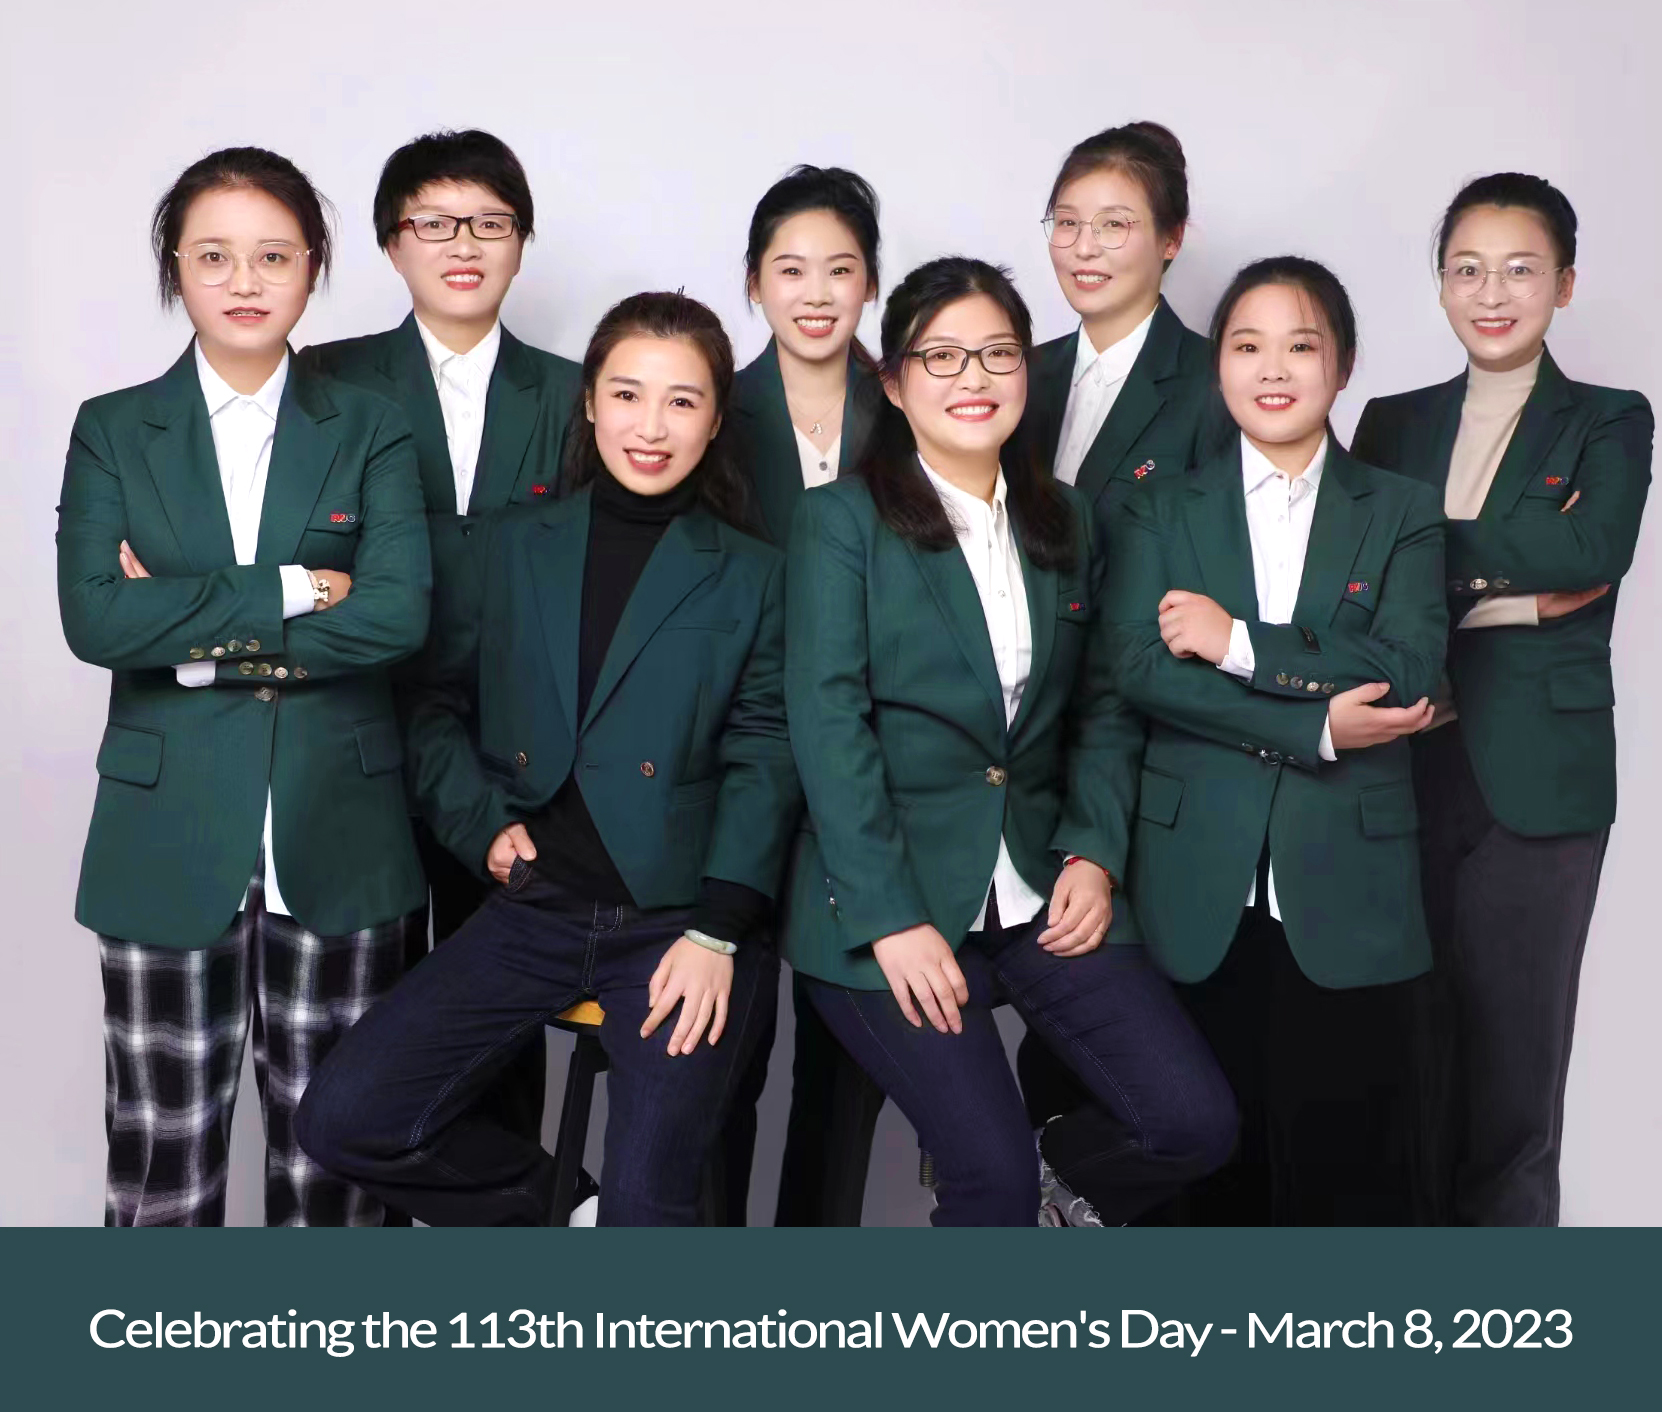 الاحتفال باليوم العالمي للمرأة الـ 113 - 8 مارس 2023